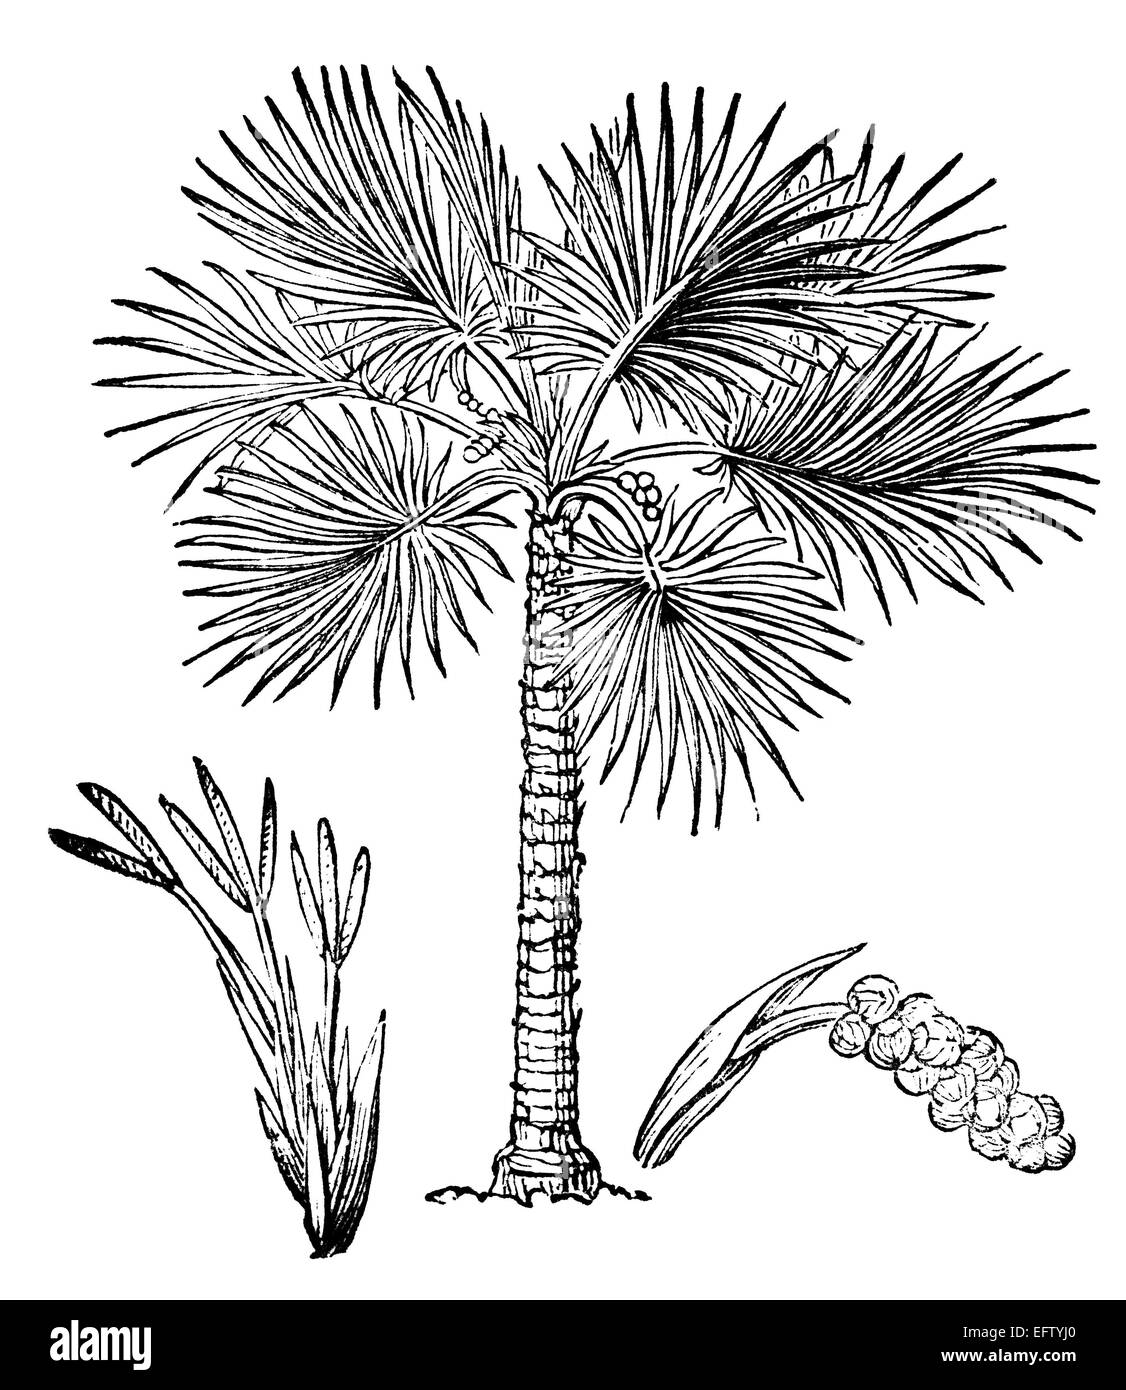 La gravure de l'époque victorienne d'un palmier de Palmyre. Image restaurée numériquement à partir d'un milieu du xixe siècle l'encyclopédie. Banque D'Images